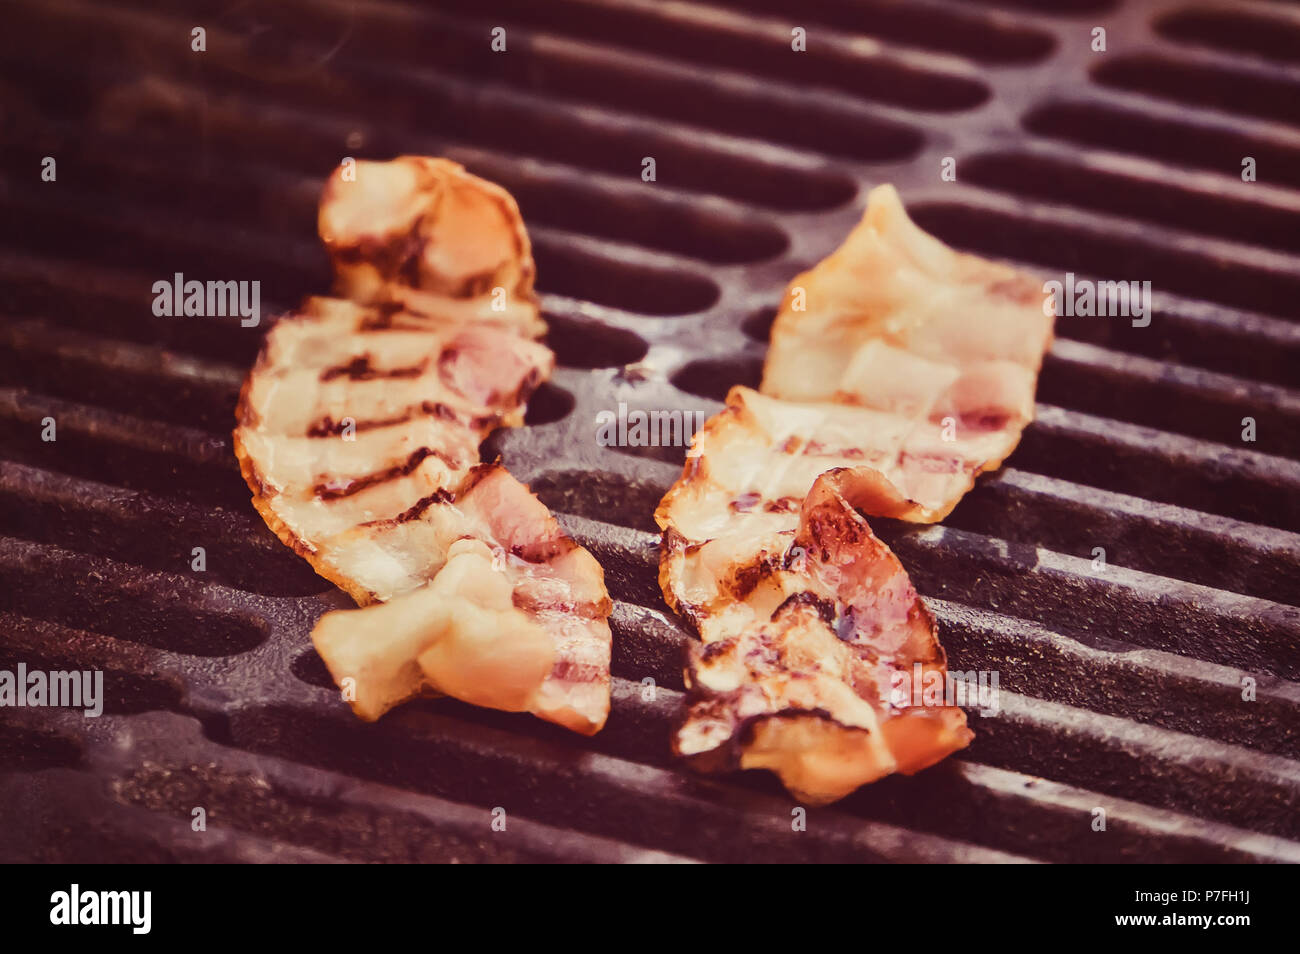 Tongs holding crispy bacon fumé barbecue grillé, cuit en tranches sur la fumée de Barbecue grill, Close up. bandes sur les tranches de bacon. Les ingrédients pour la sa Banque D'Images